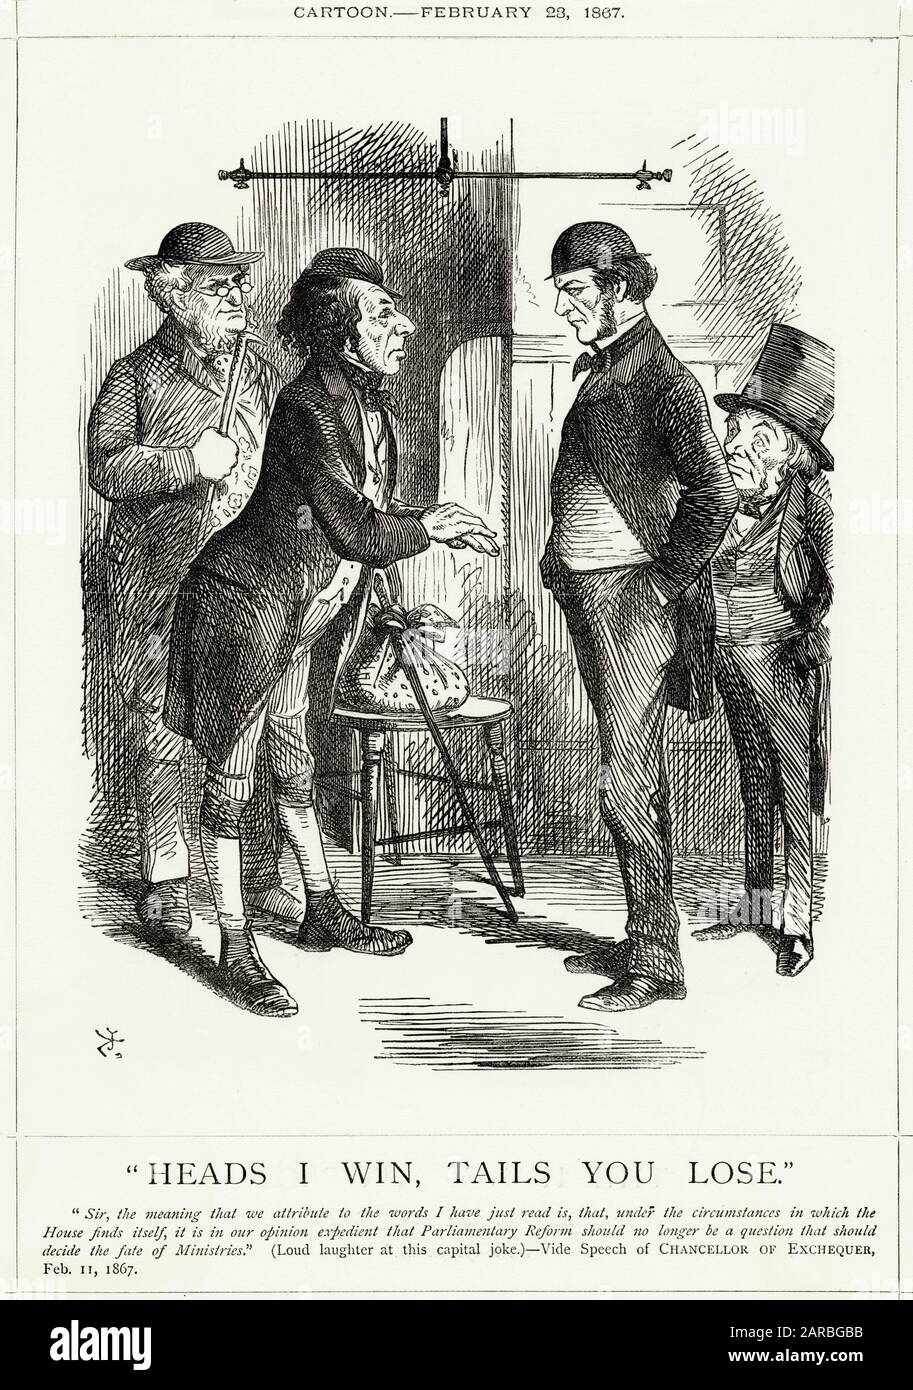 Cartoon, Heads I Win, Tails You Lose -- un commentaire satirique sur la rivalité entre Disraeli (à gauche) et Gladstone (à droite) sur la question de la réforme électorale. Lord Derby et Lord John Russell sont également présents. Banque D'Images